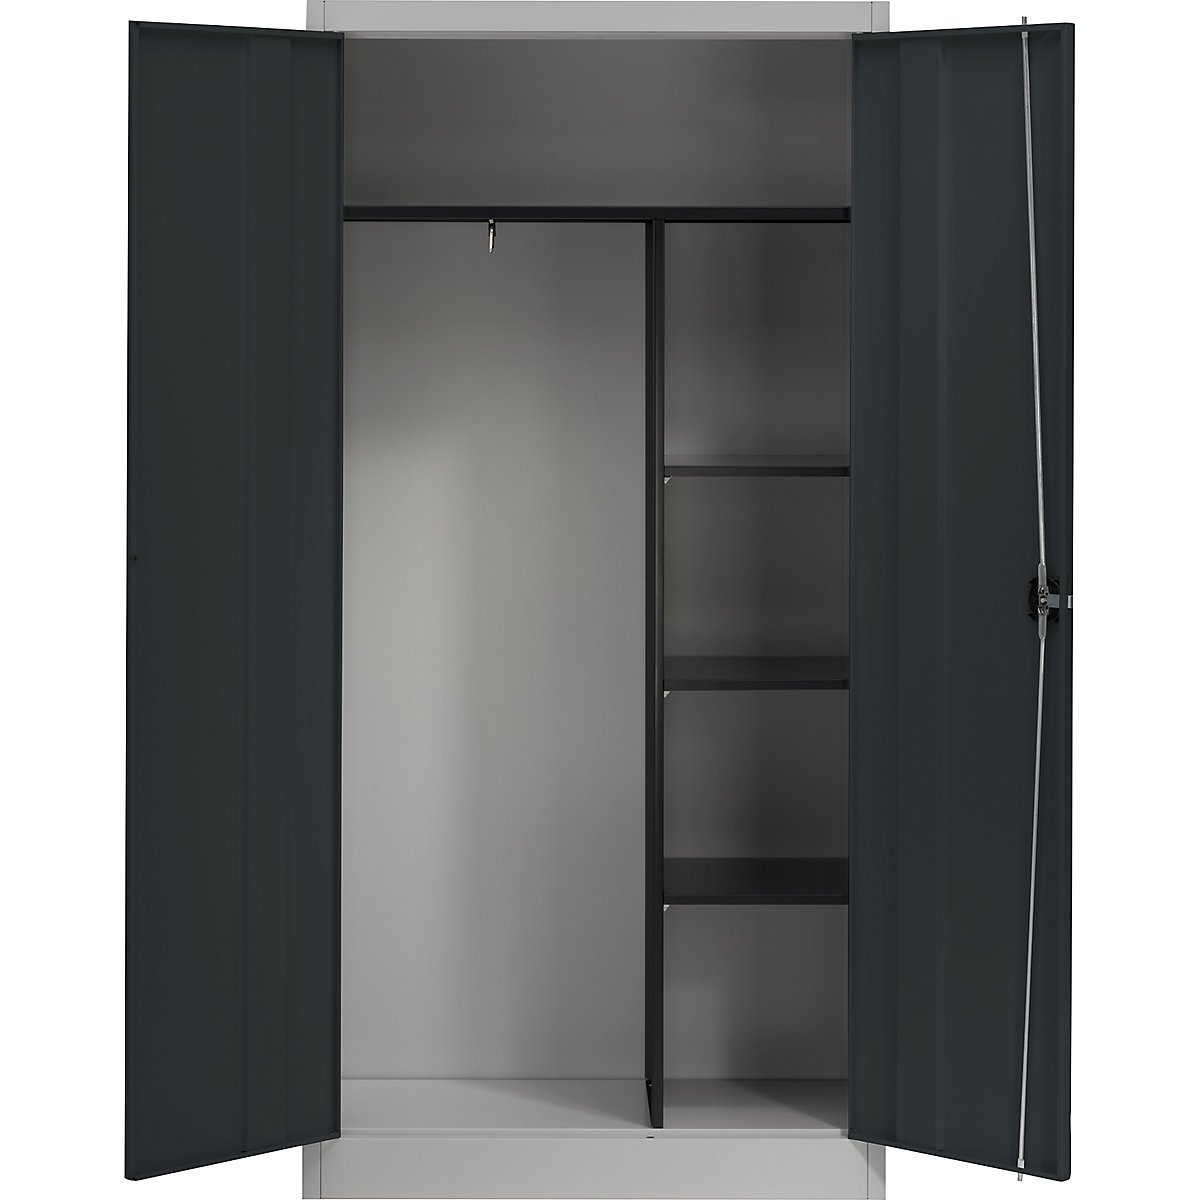 Čelični ormar s krilnim vratima – mauser, 3 kratke police i garderoba, u aluminij bijeloj / antracit sivoj boji-4